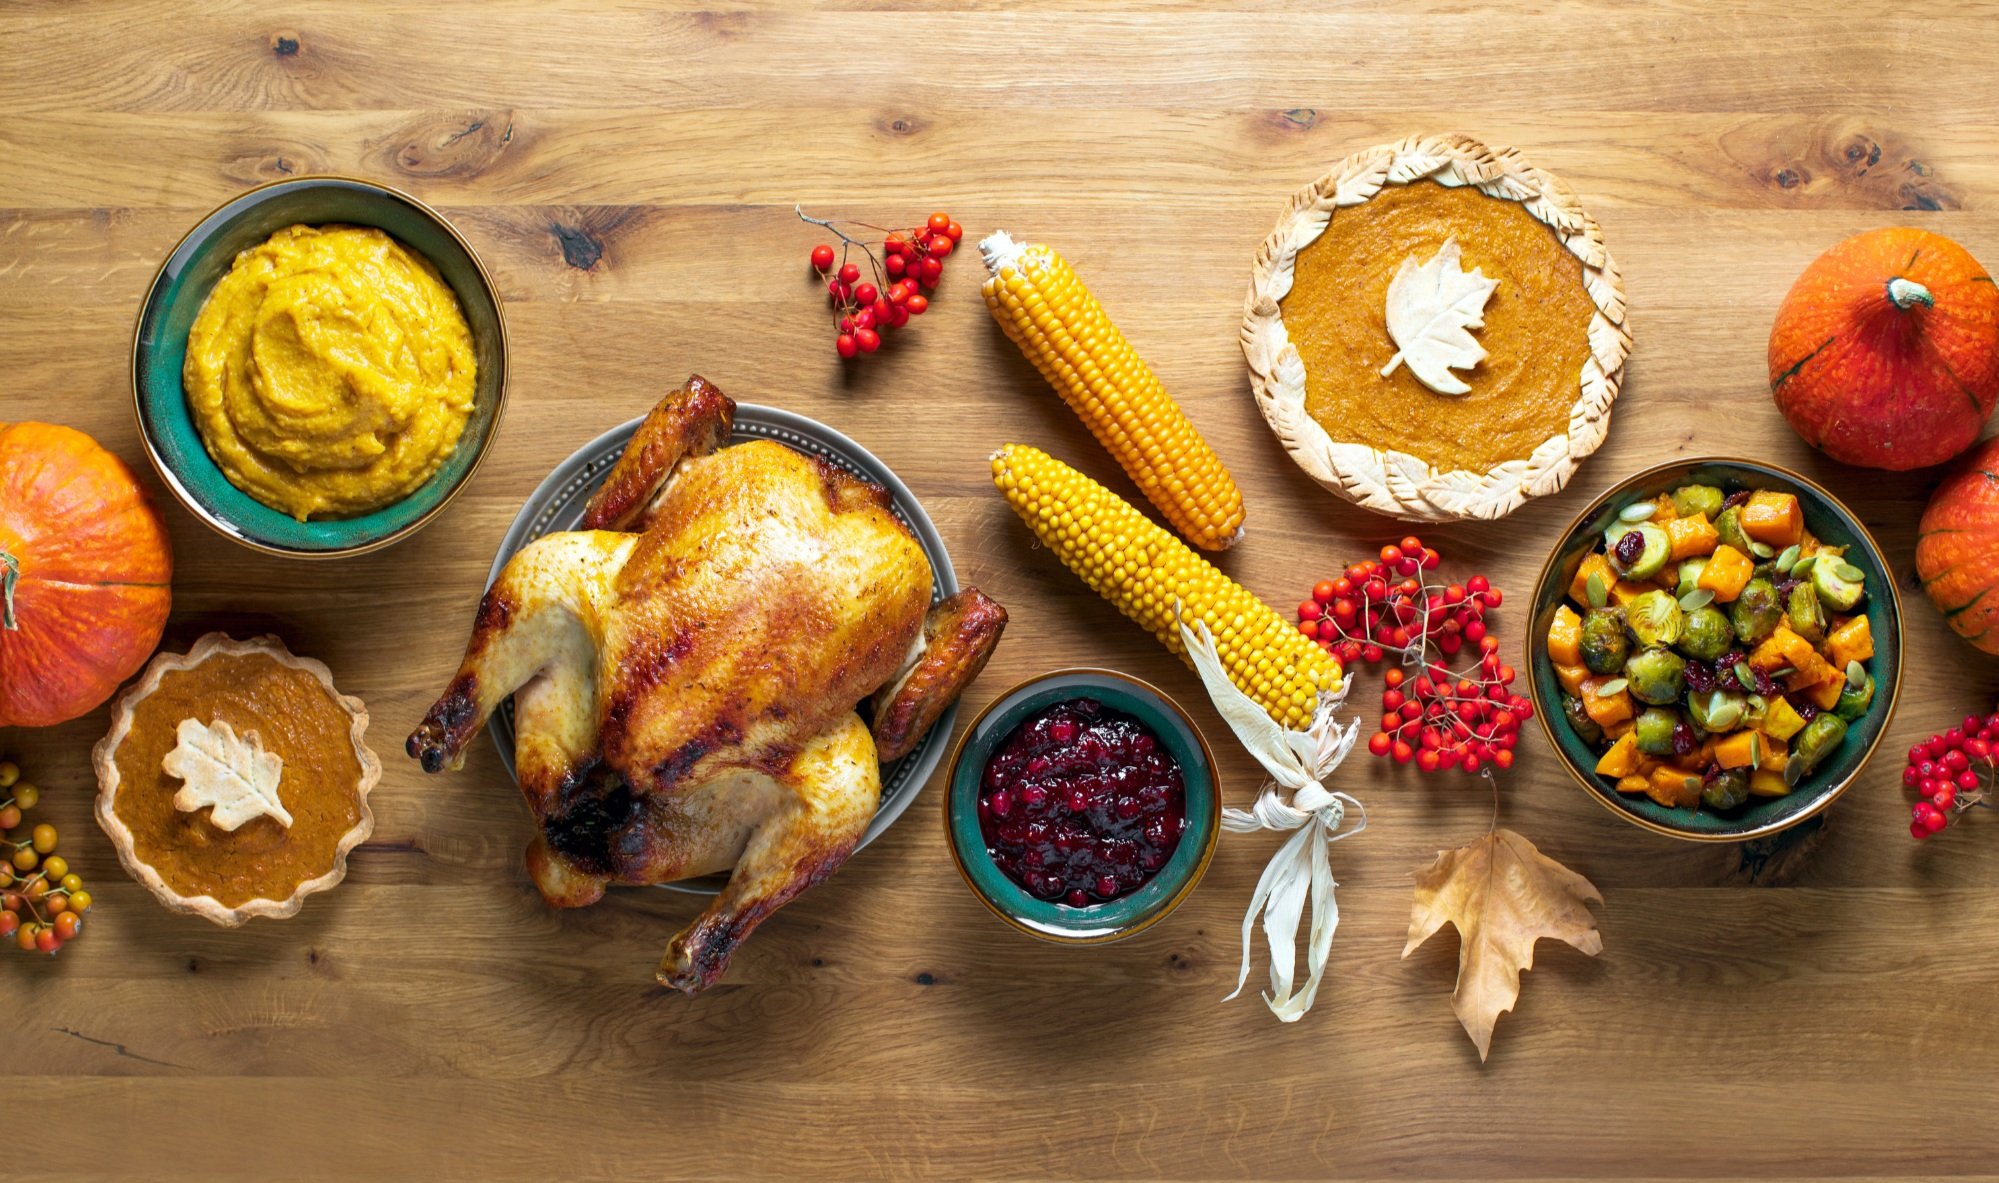 Best Restaurants for Thanksgiving Dinner in Nashville — Search